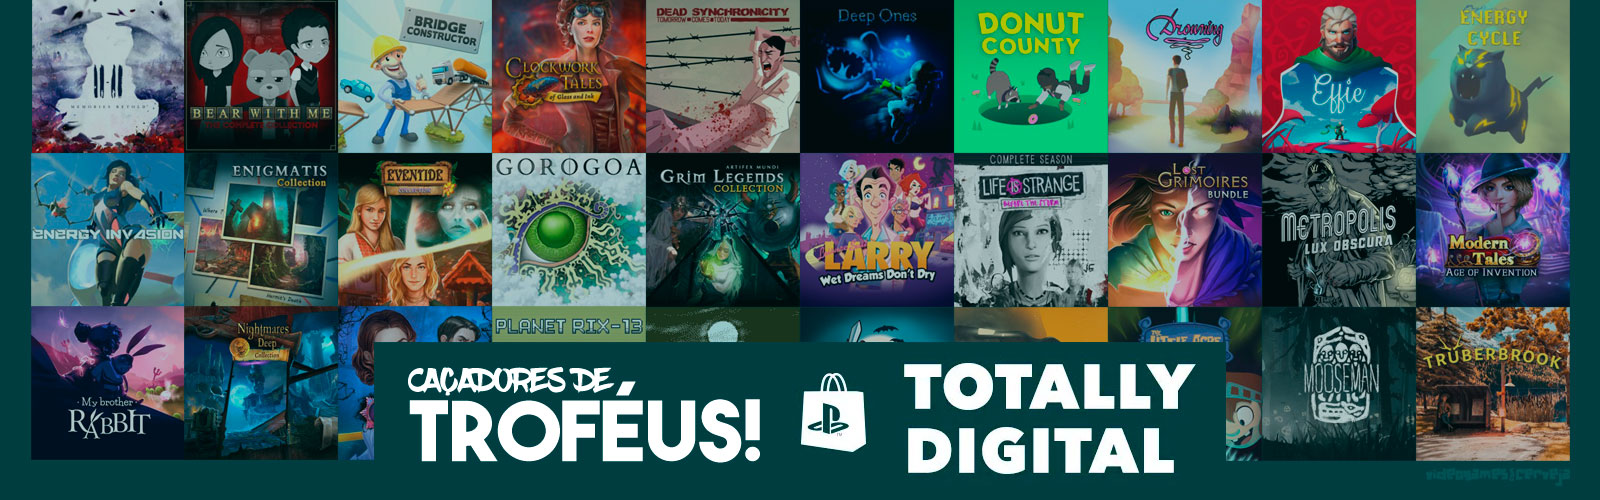 42 platinas rápidas na promoção 'Totally Digital' da PS Store! Cover